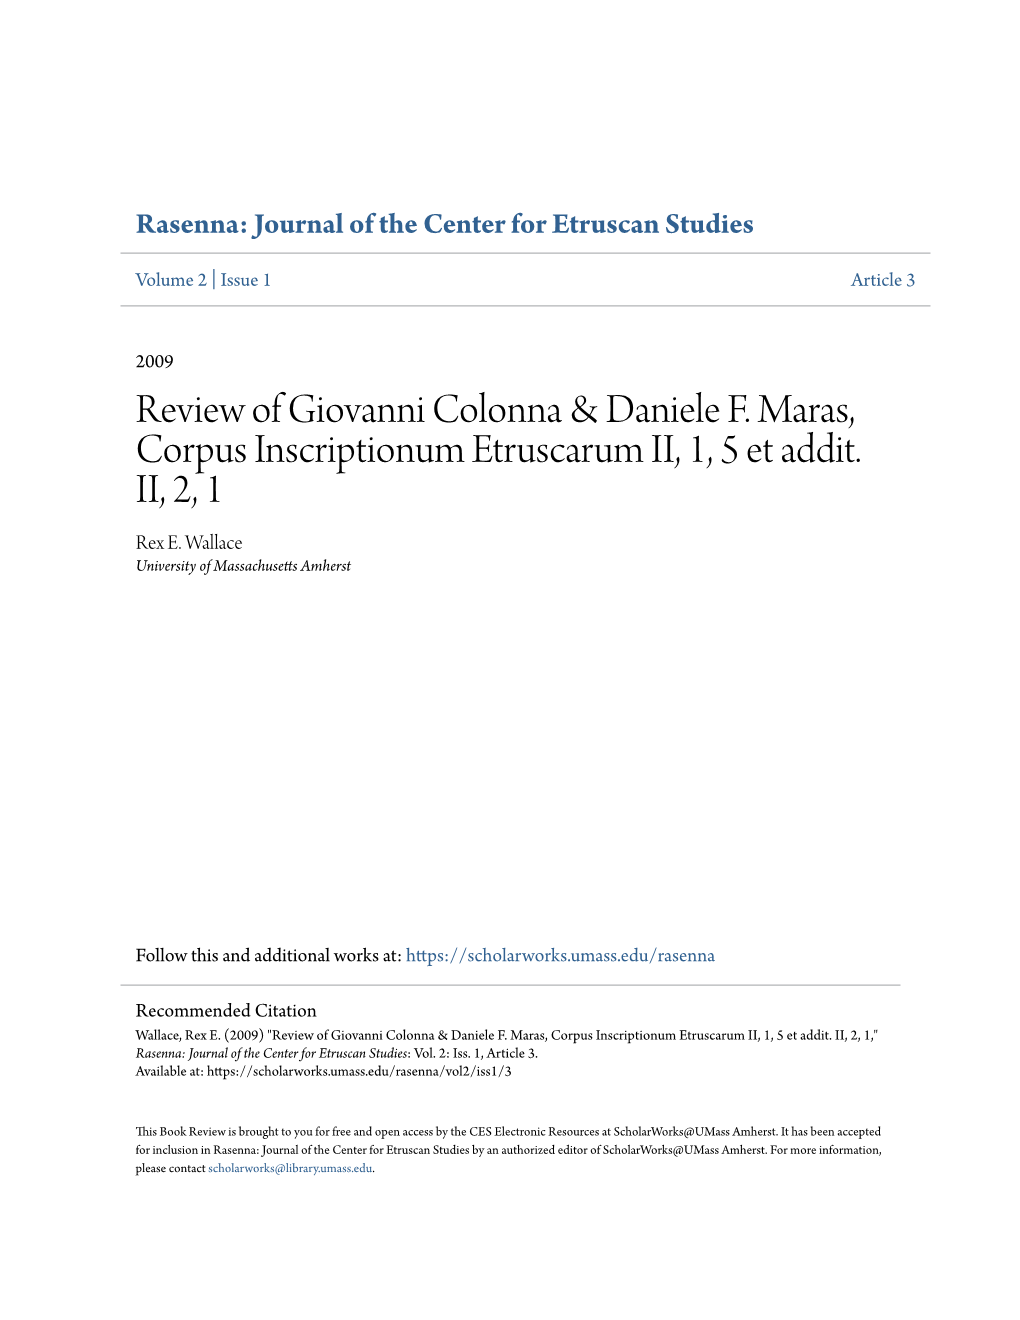 Review of Giovanni Colonna & Daniele F. Maras, Corpus